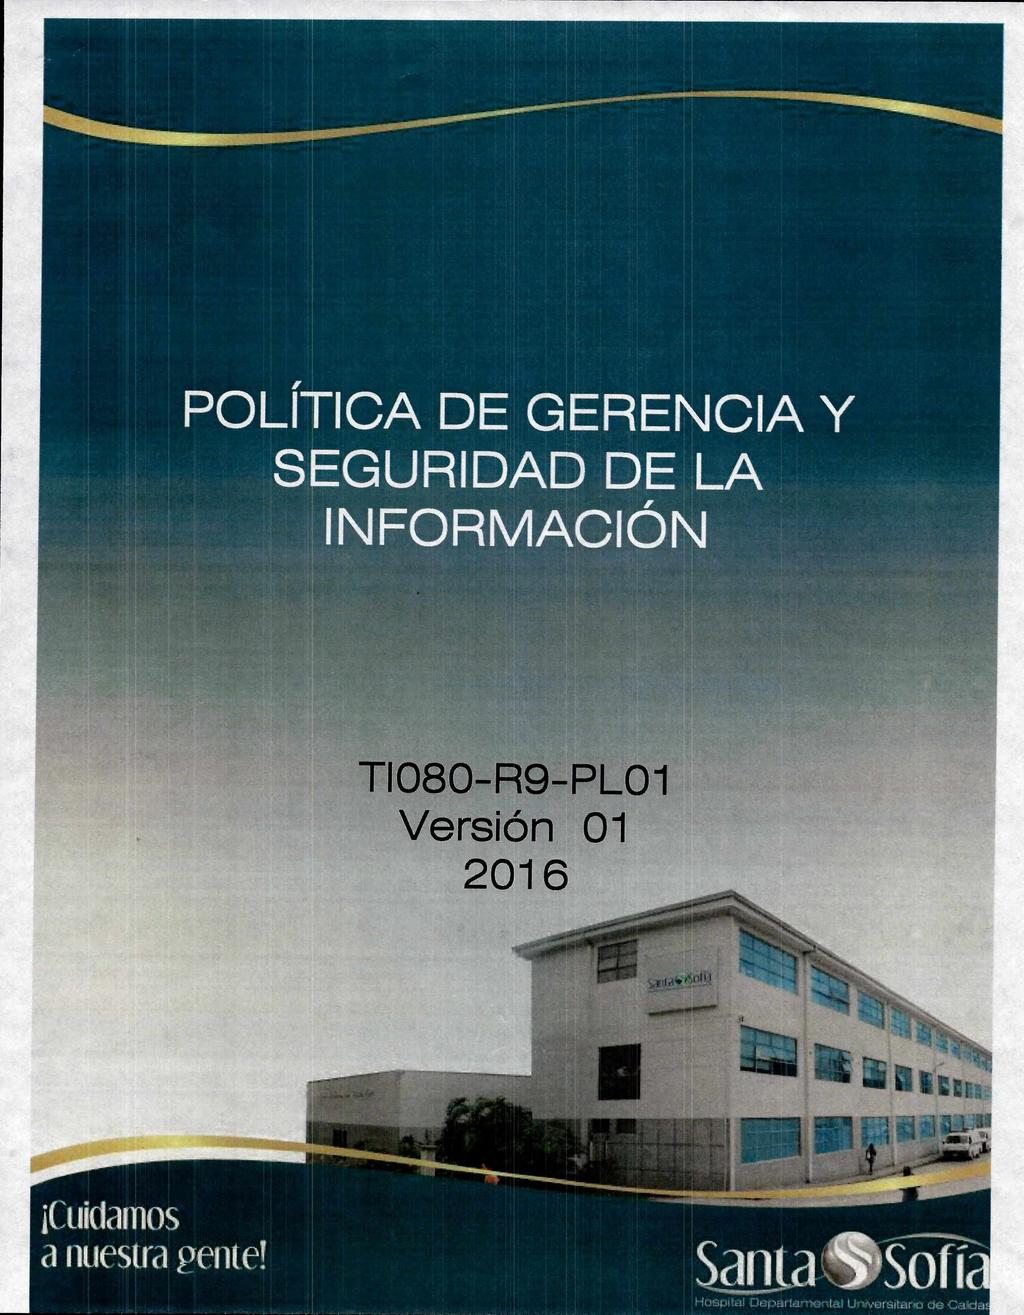 411111~11Mmummomir POLÍTICA DE GERENCIA Y SEGURIDAD DE LA INFORMACIÓN T1080-R9-PLO1